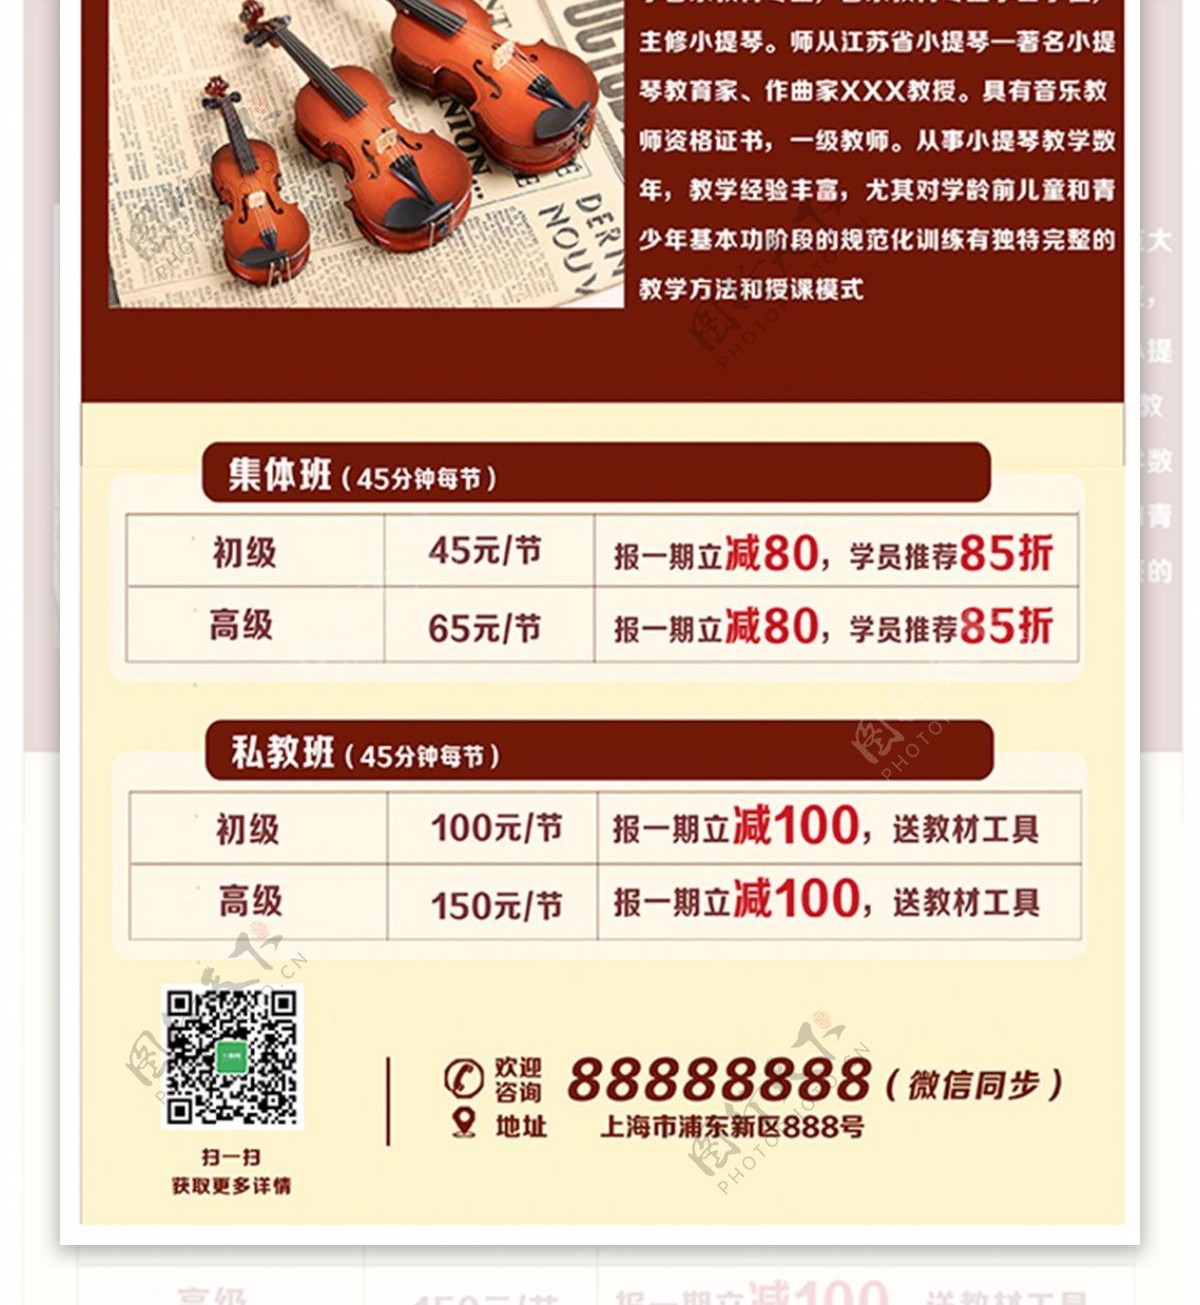 小提琴工作室培训招生宣传单